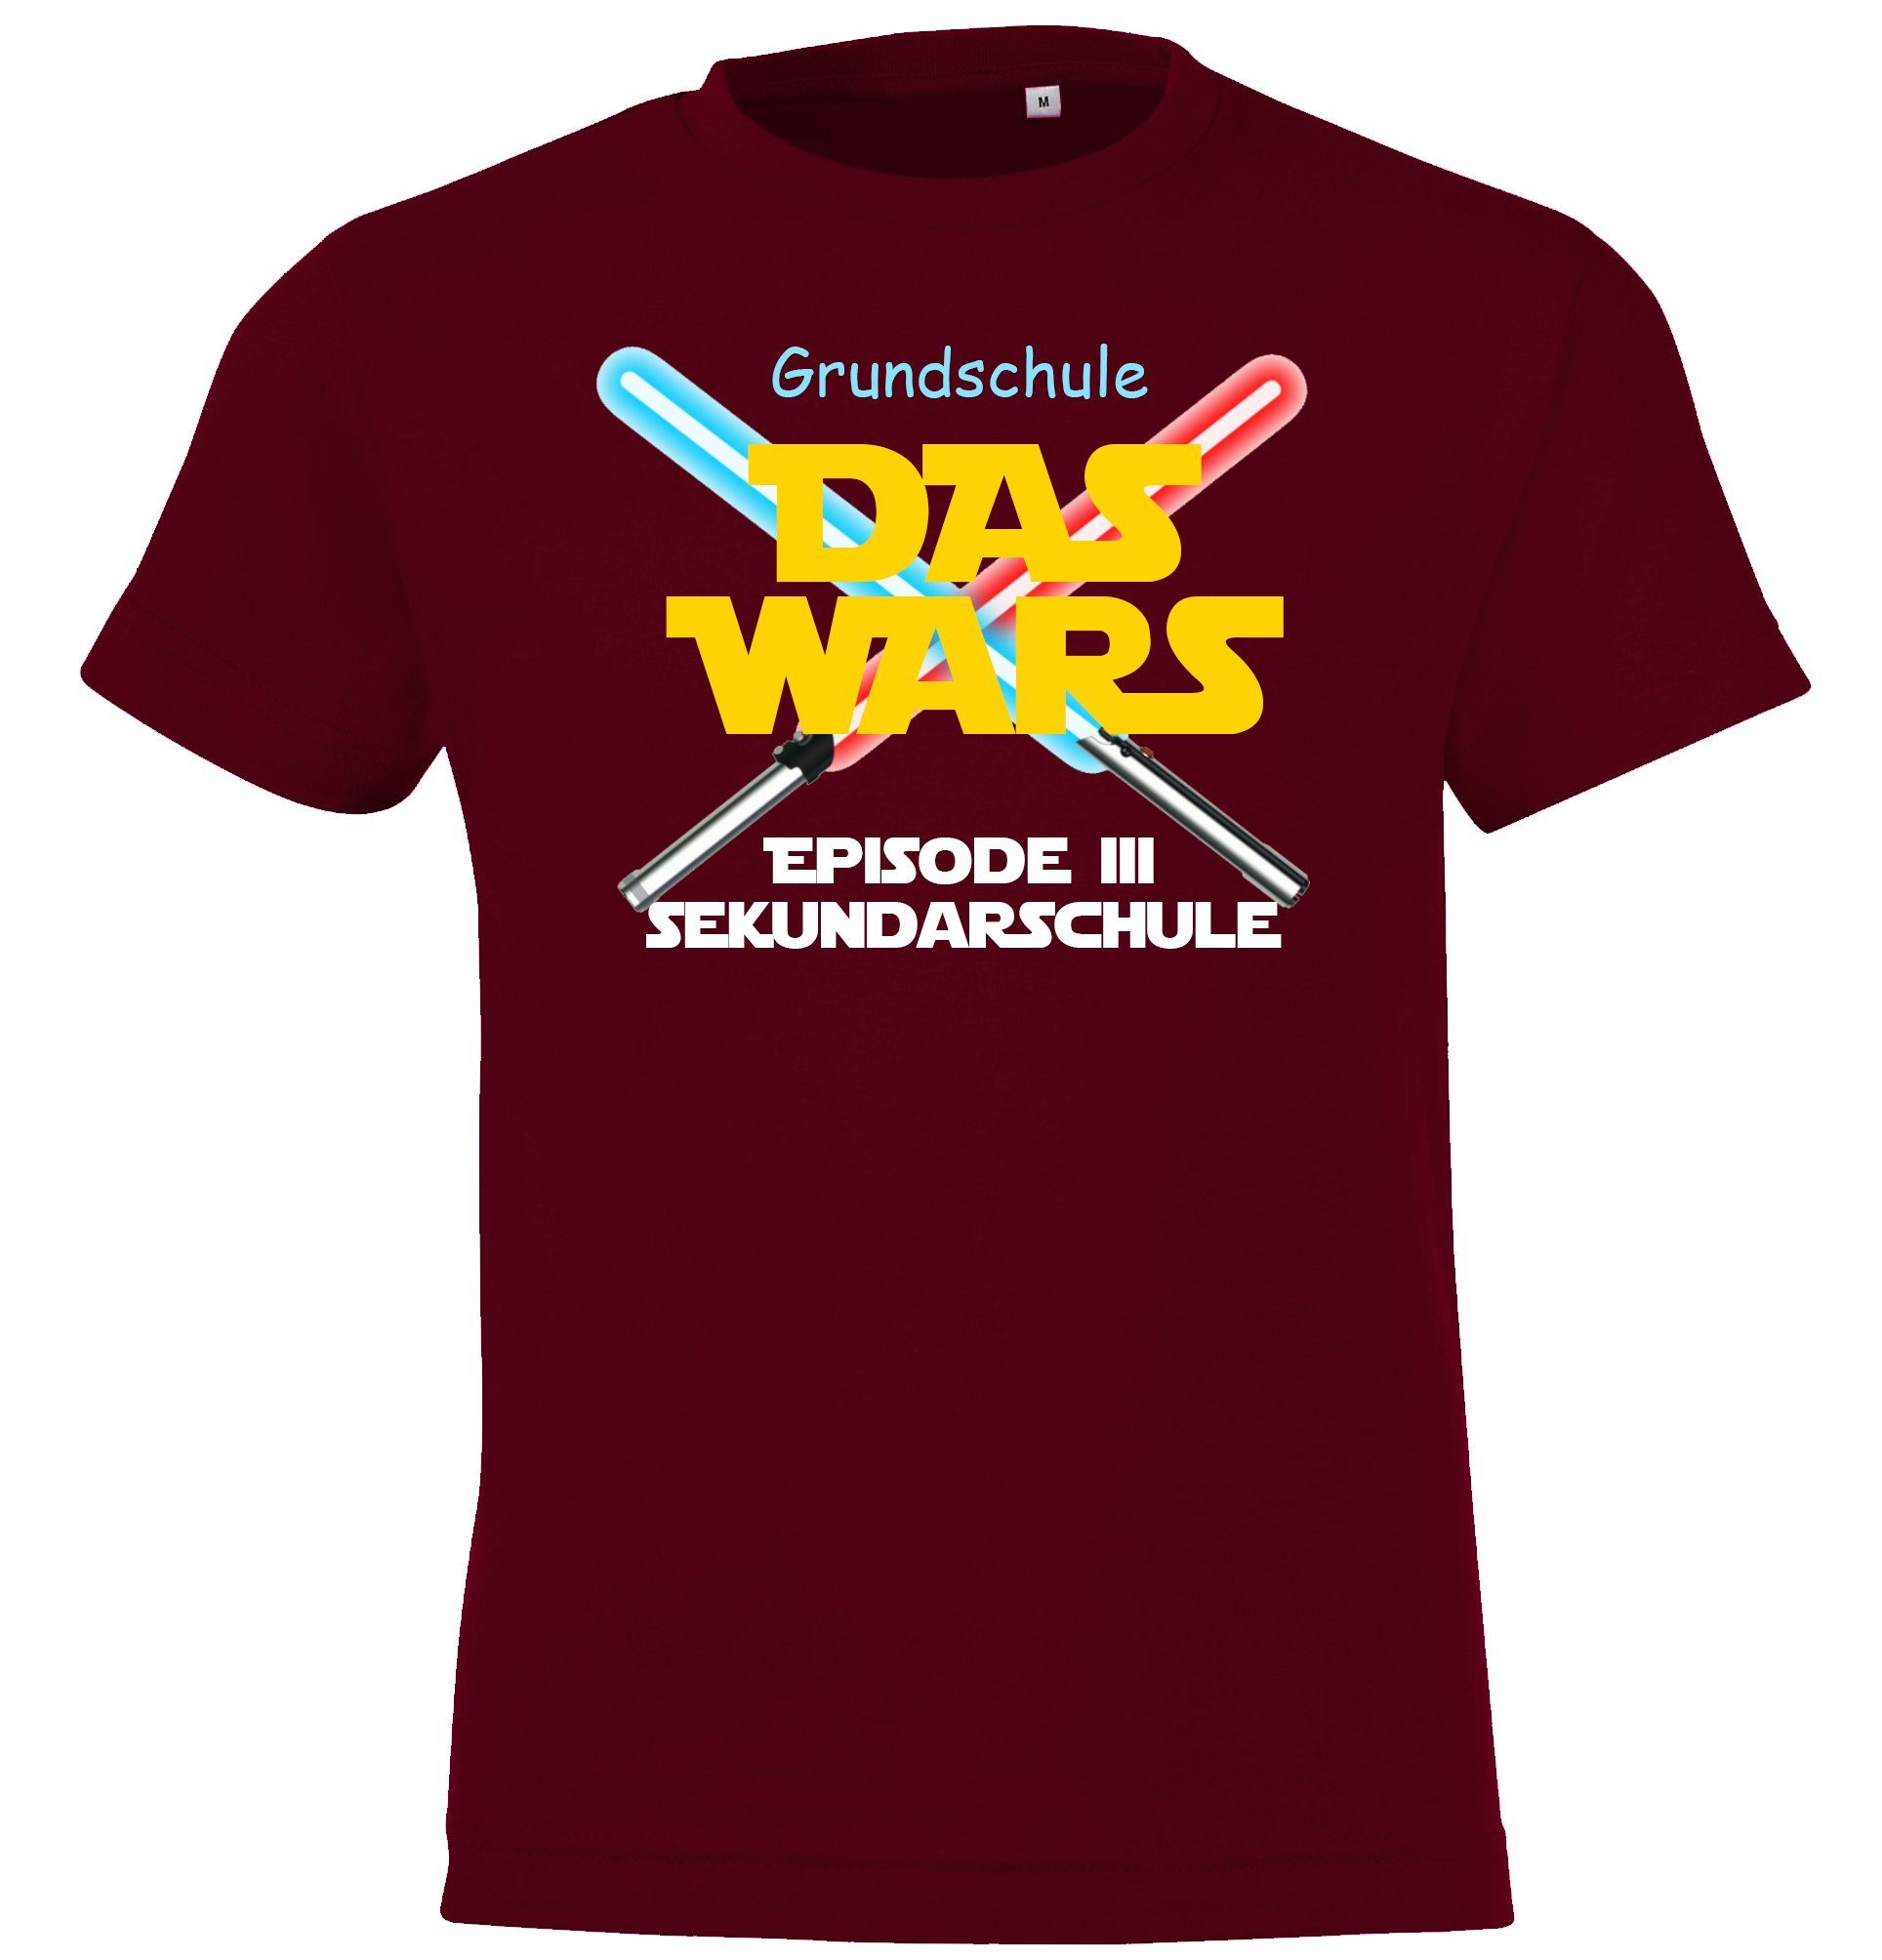 T-Shirt Schulzeit Kinder Burgund Motiv Designz Wars Das Youth lustigem mit Shirt Grundschule der